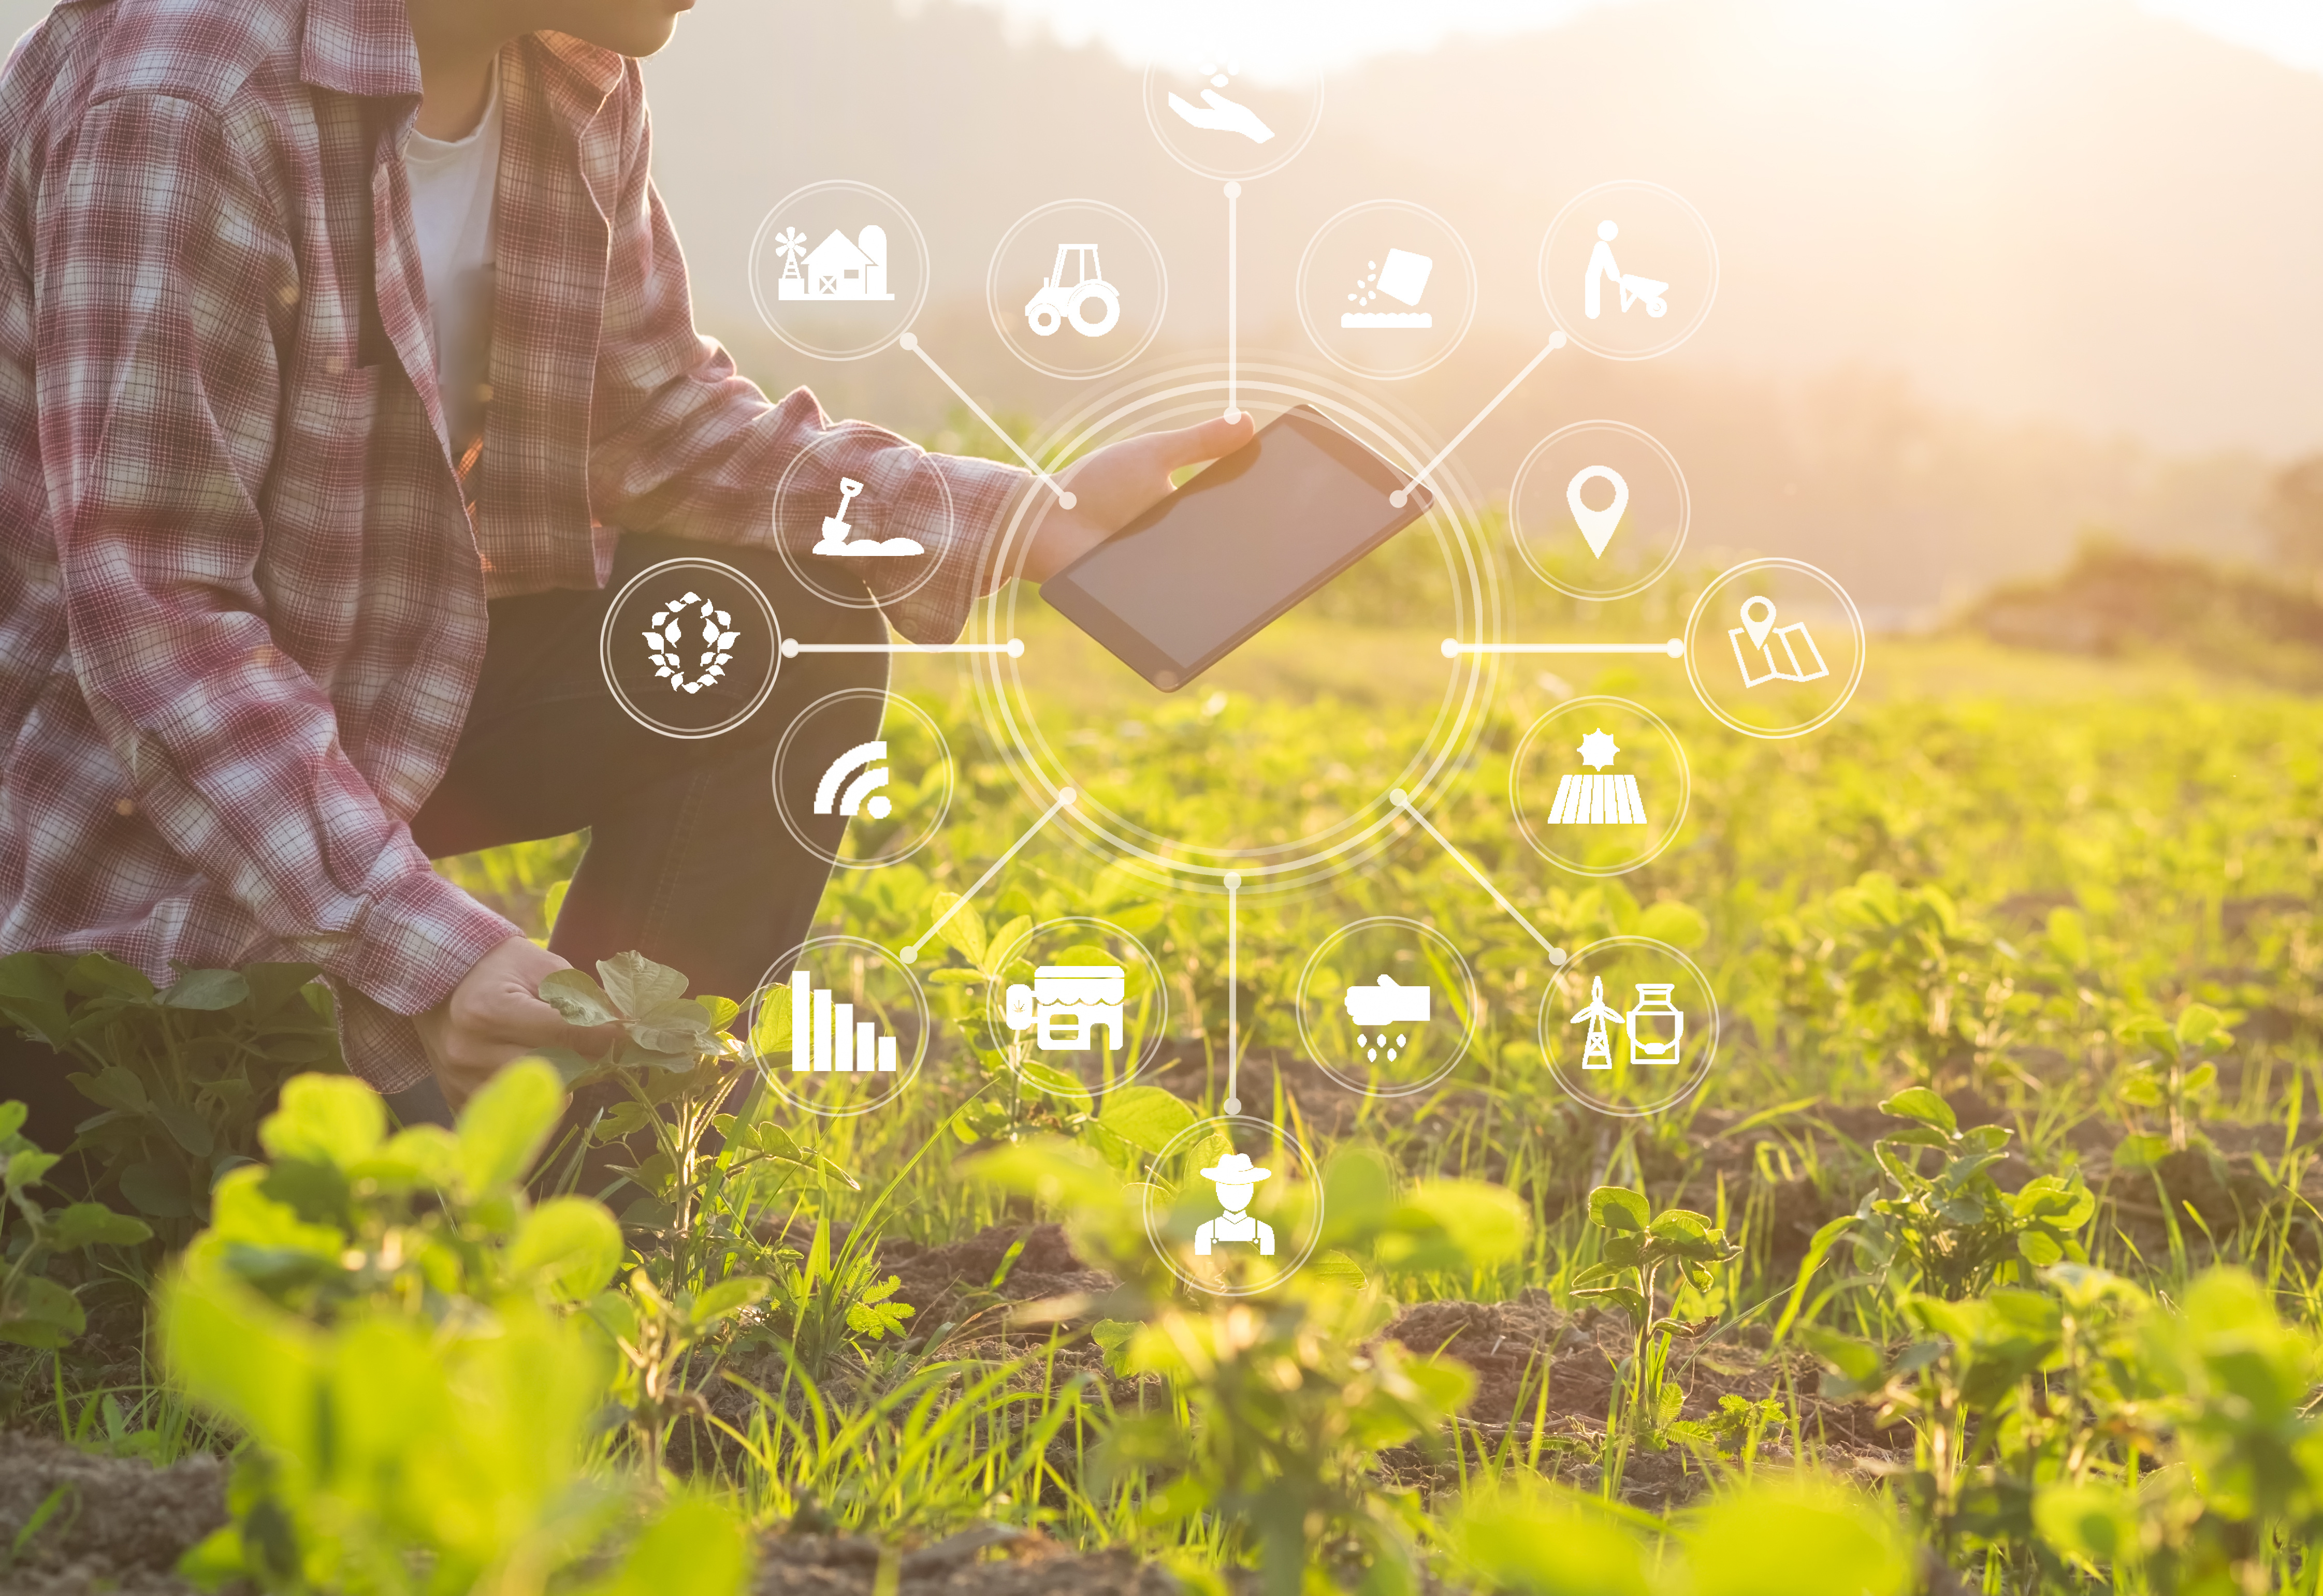 Digitale communicatie in agroketen eindelijk goed geregeld - Adobestock 207517197